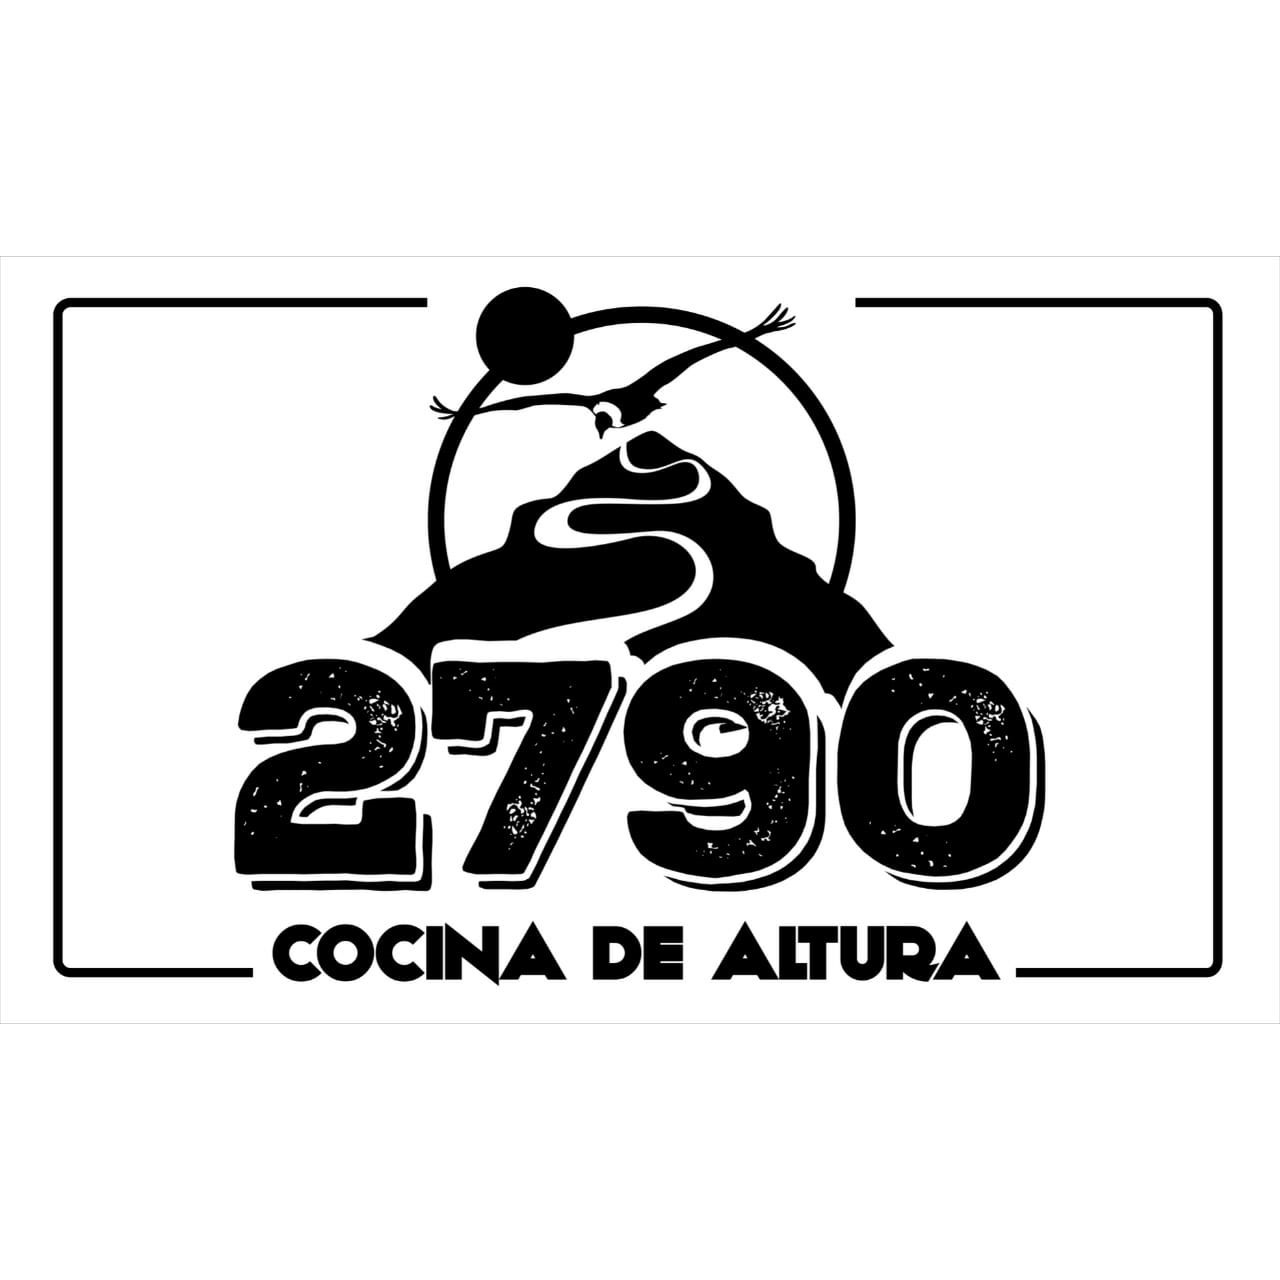 2790 Cocina de Altura